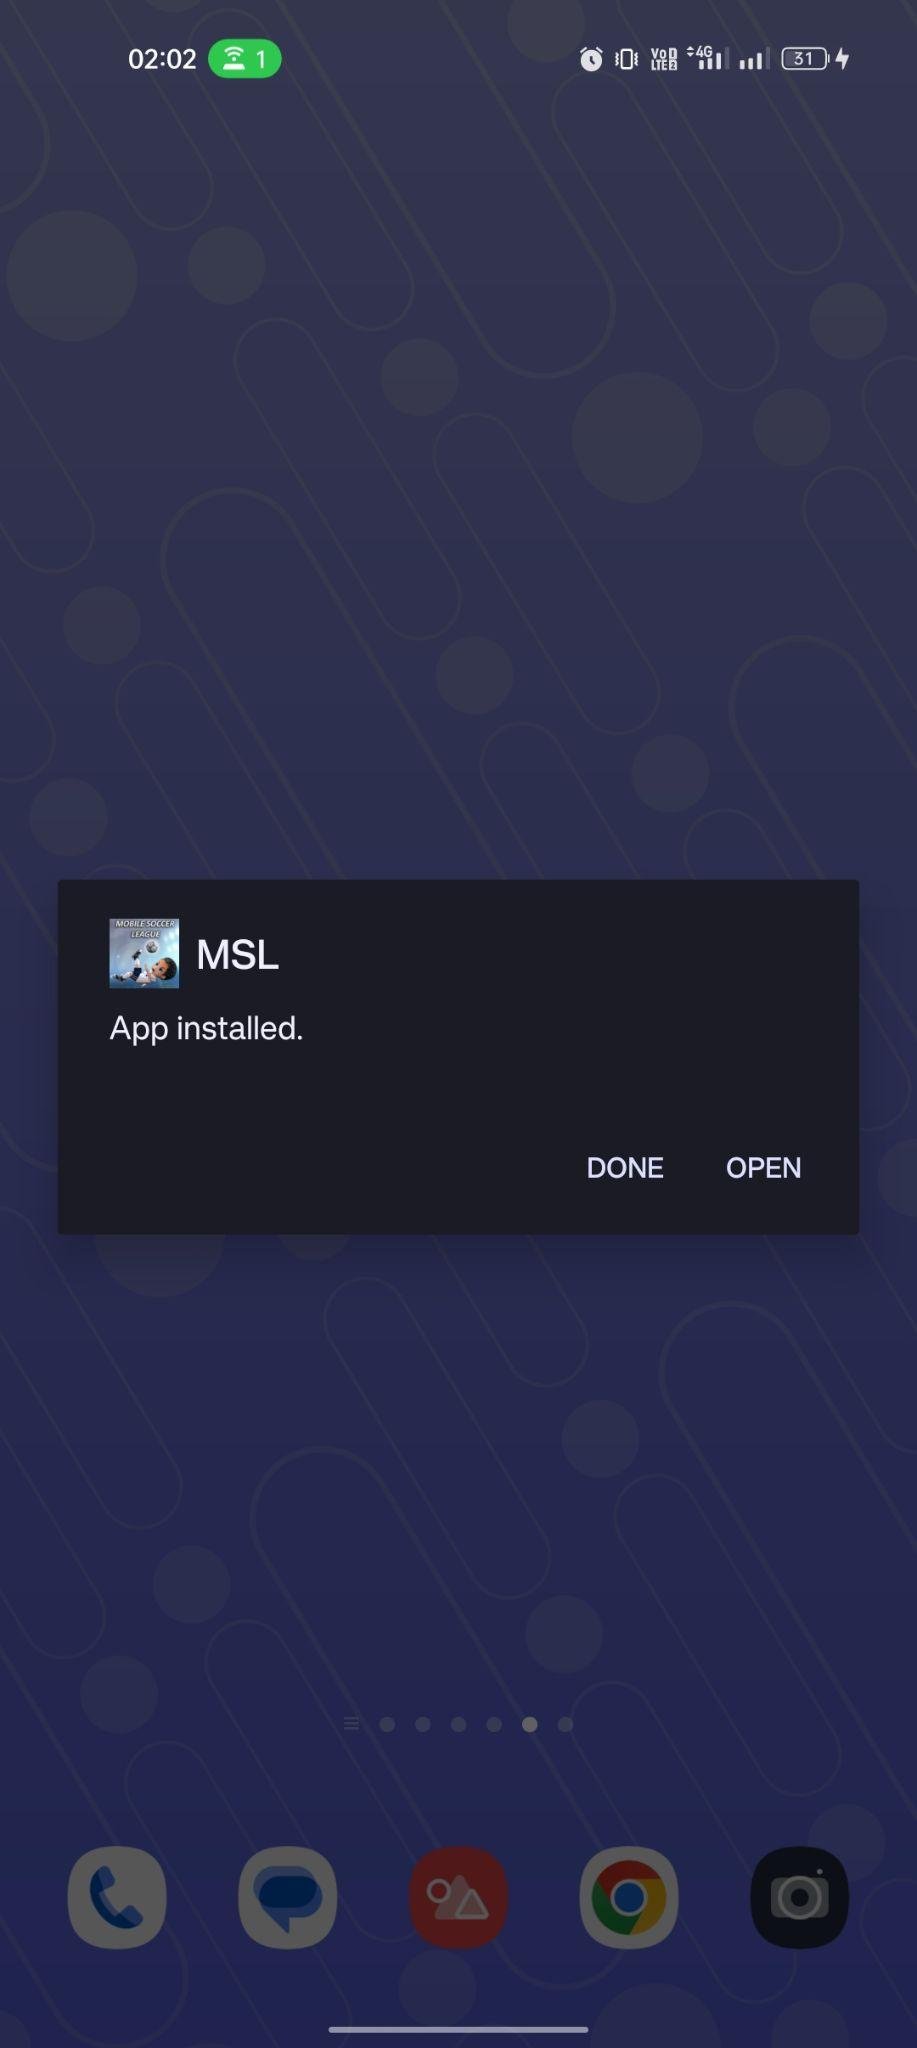 MSL apk installed